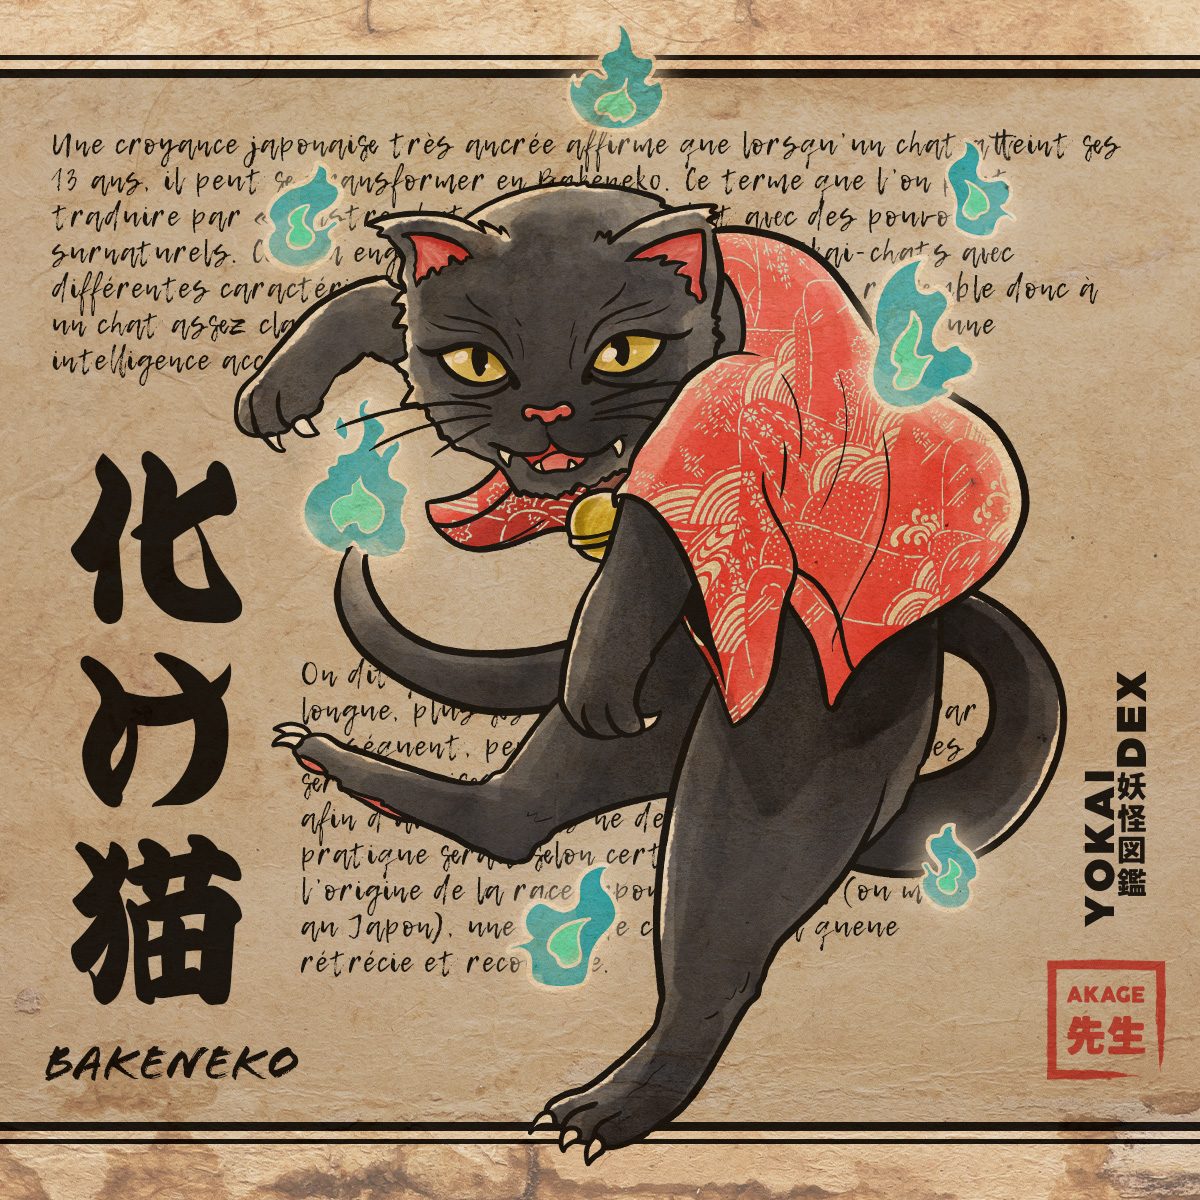 Livre Yokaidex famille cryptide créature esprit bakeneko chat pouvoirs surnaturel queue fourchue